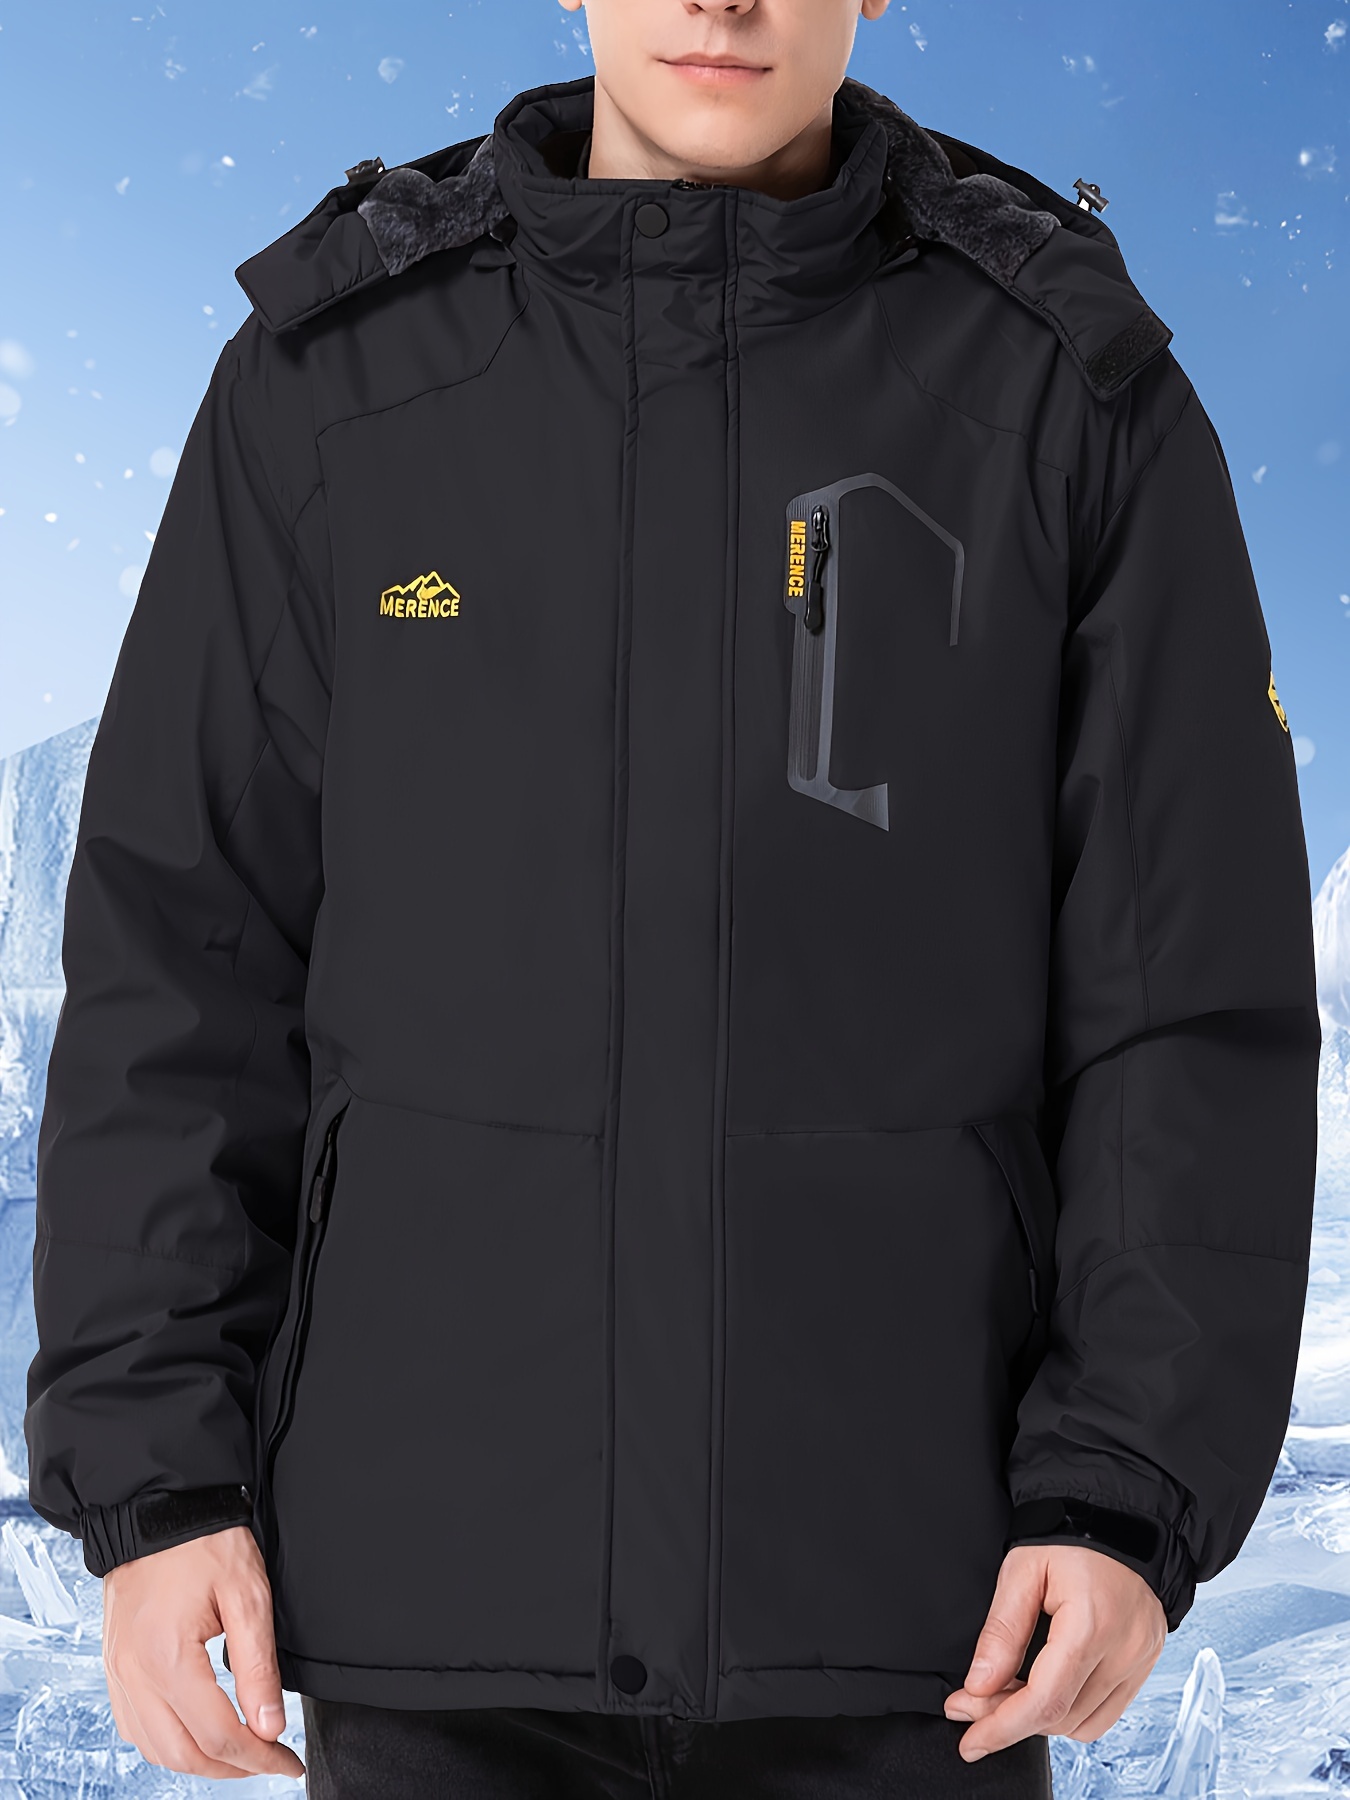 Chaqueta larga con capucha para hombre, resistente al viento, gruesa y  cálida, abrigo de esquí de nieve para hombre, bolsillos casuales para